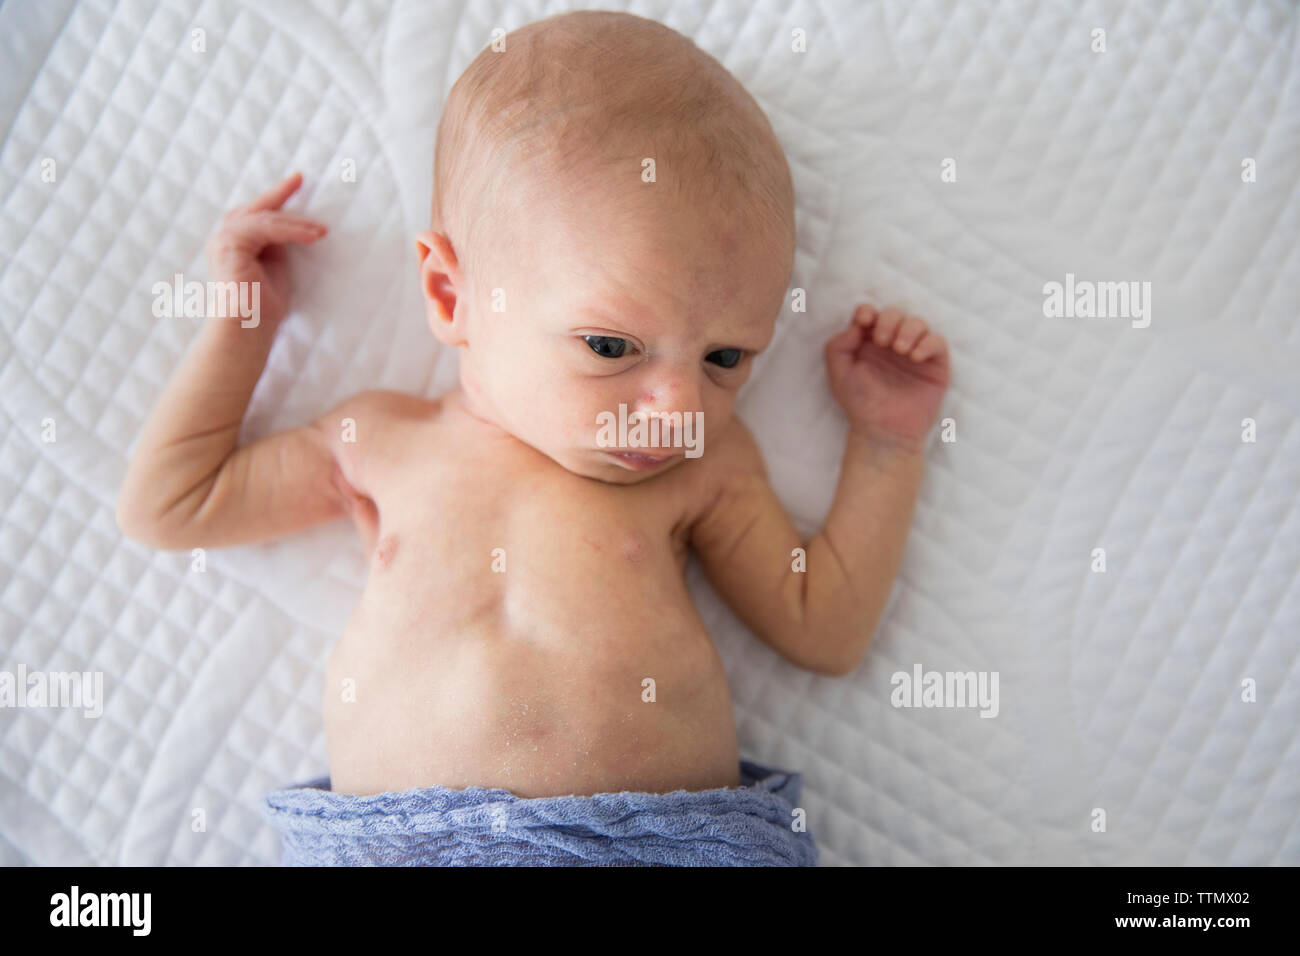 Vista aérea de despierto, alerta niña recién nacida envuelta en una manta púrpura Foto de stock